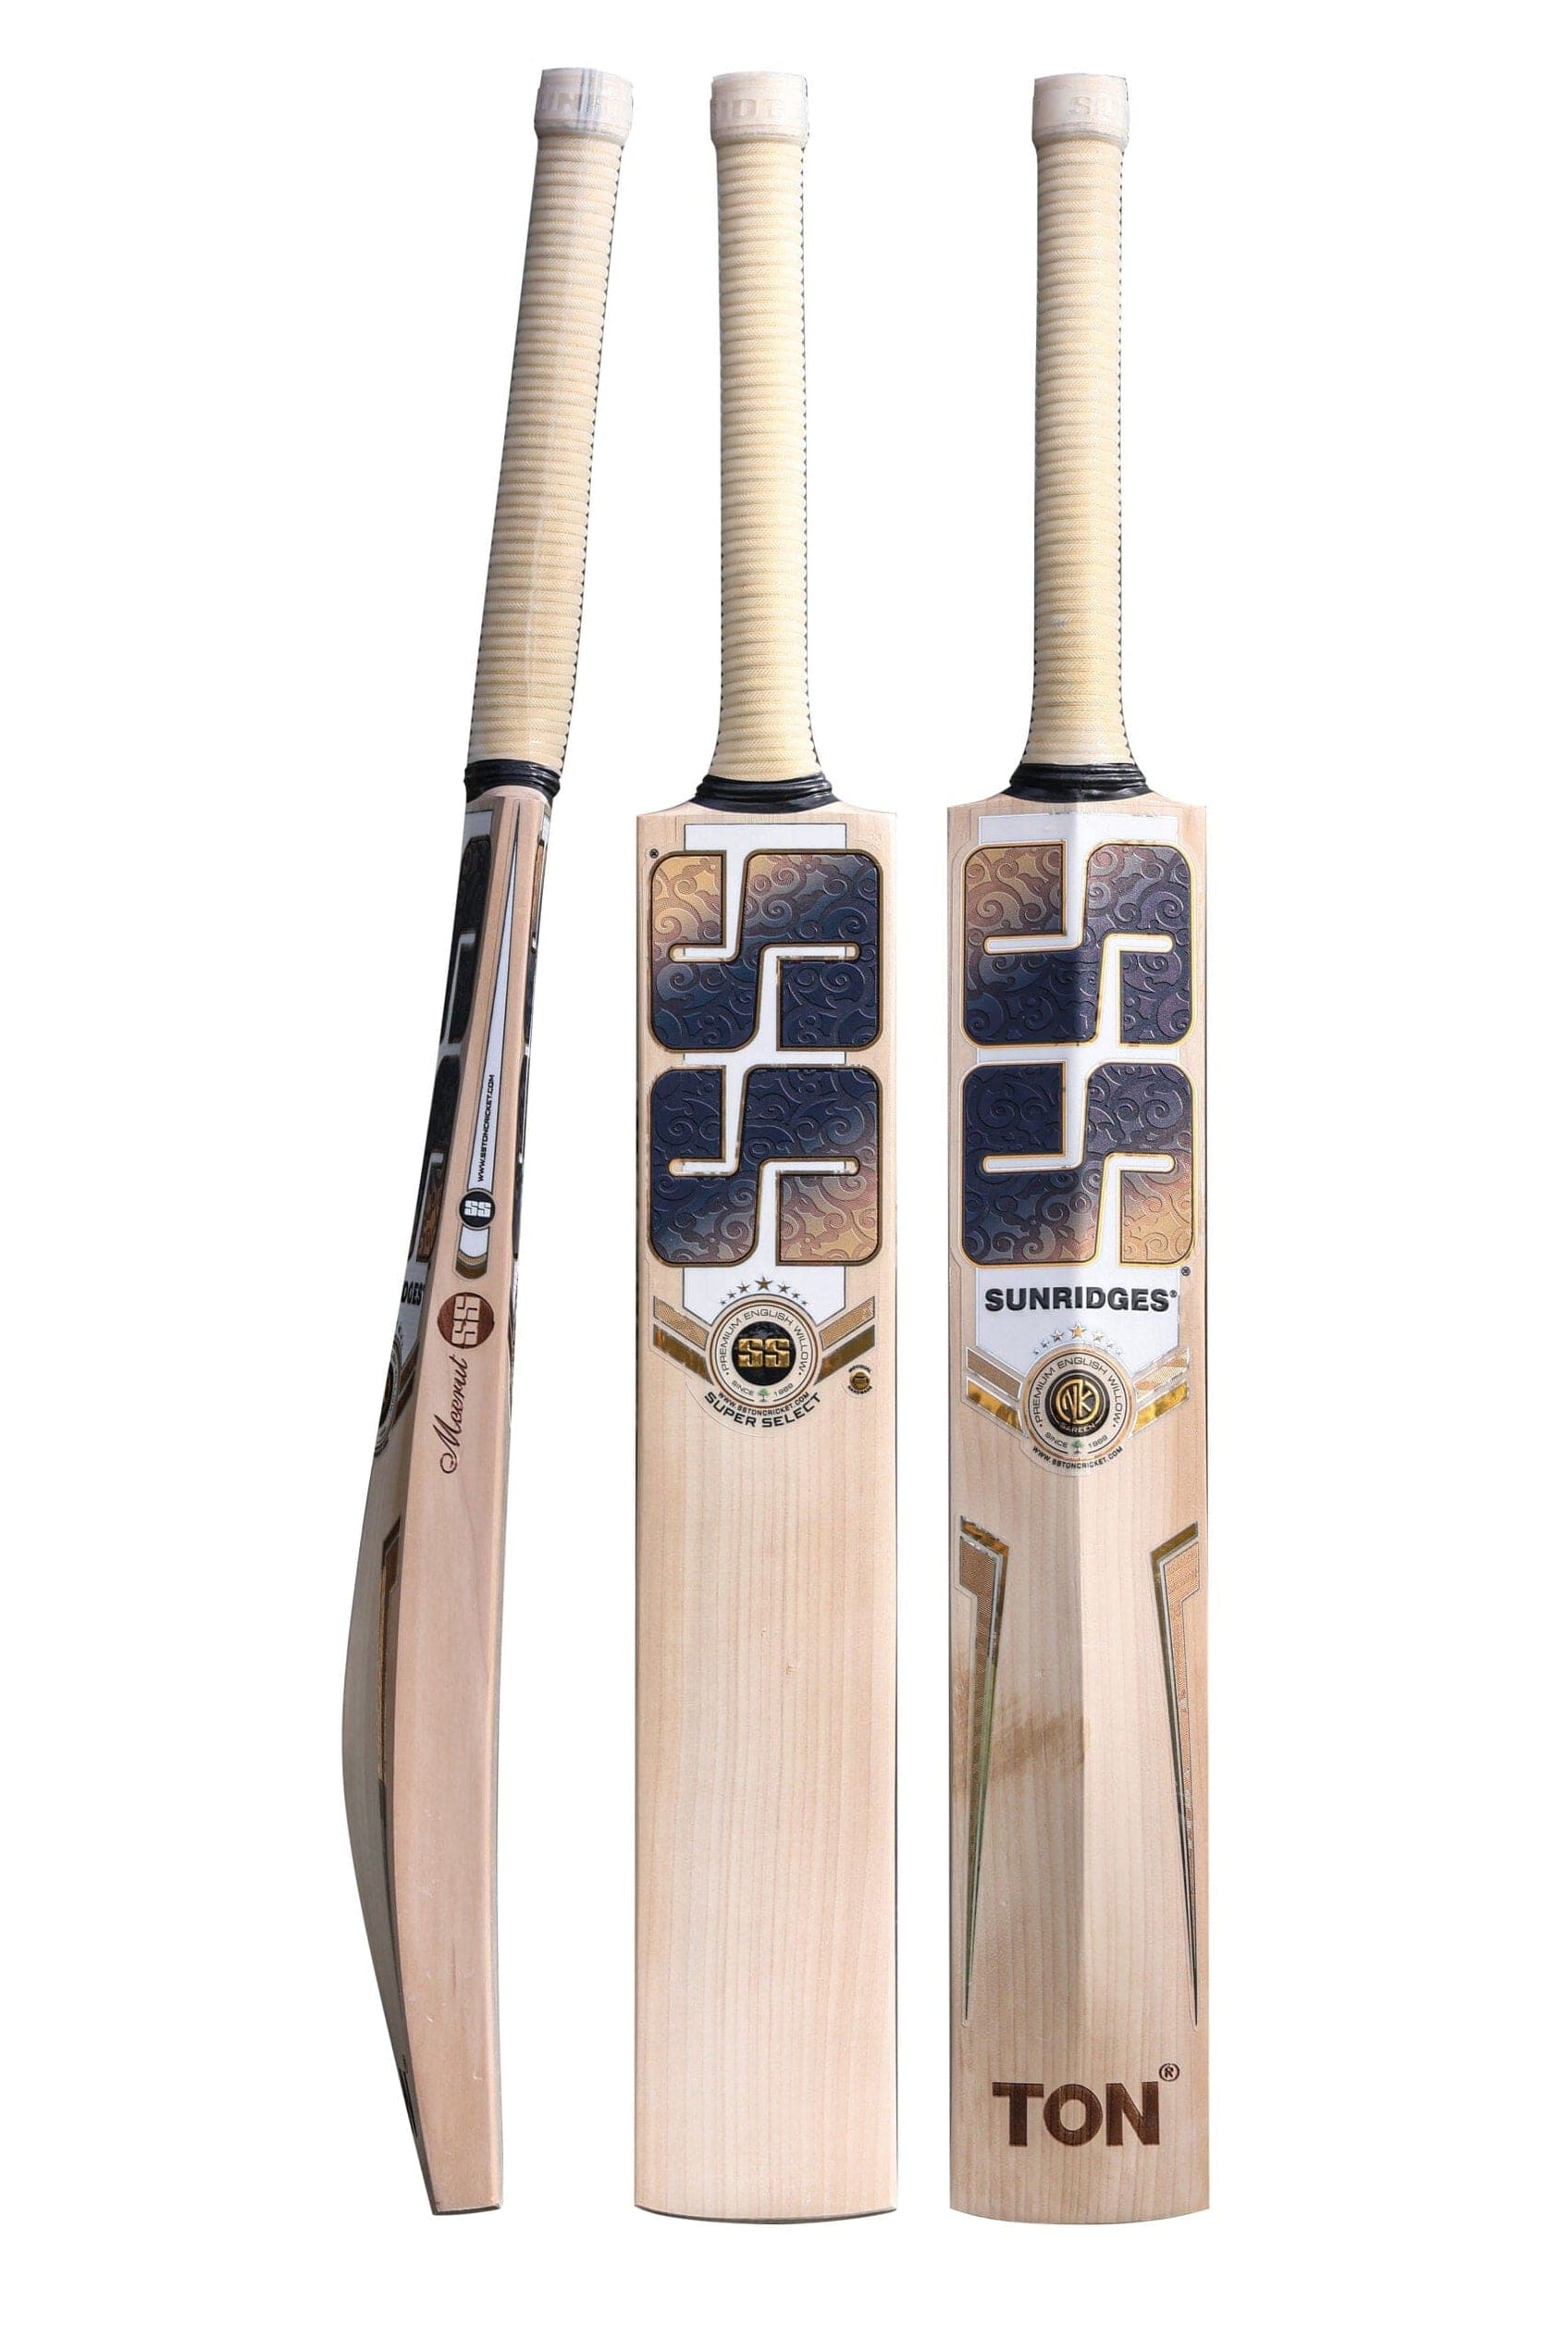 SS Cricket Bats Short Handle / Light 2lbs 8oz - 2lbs 10oz SS Super Select Adult Cricket Bat